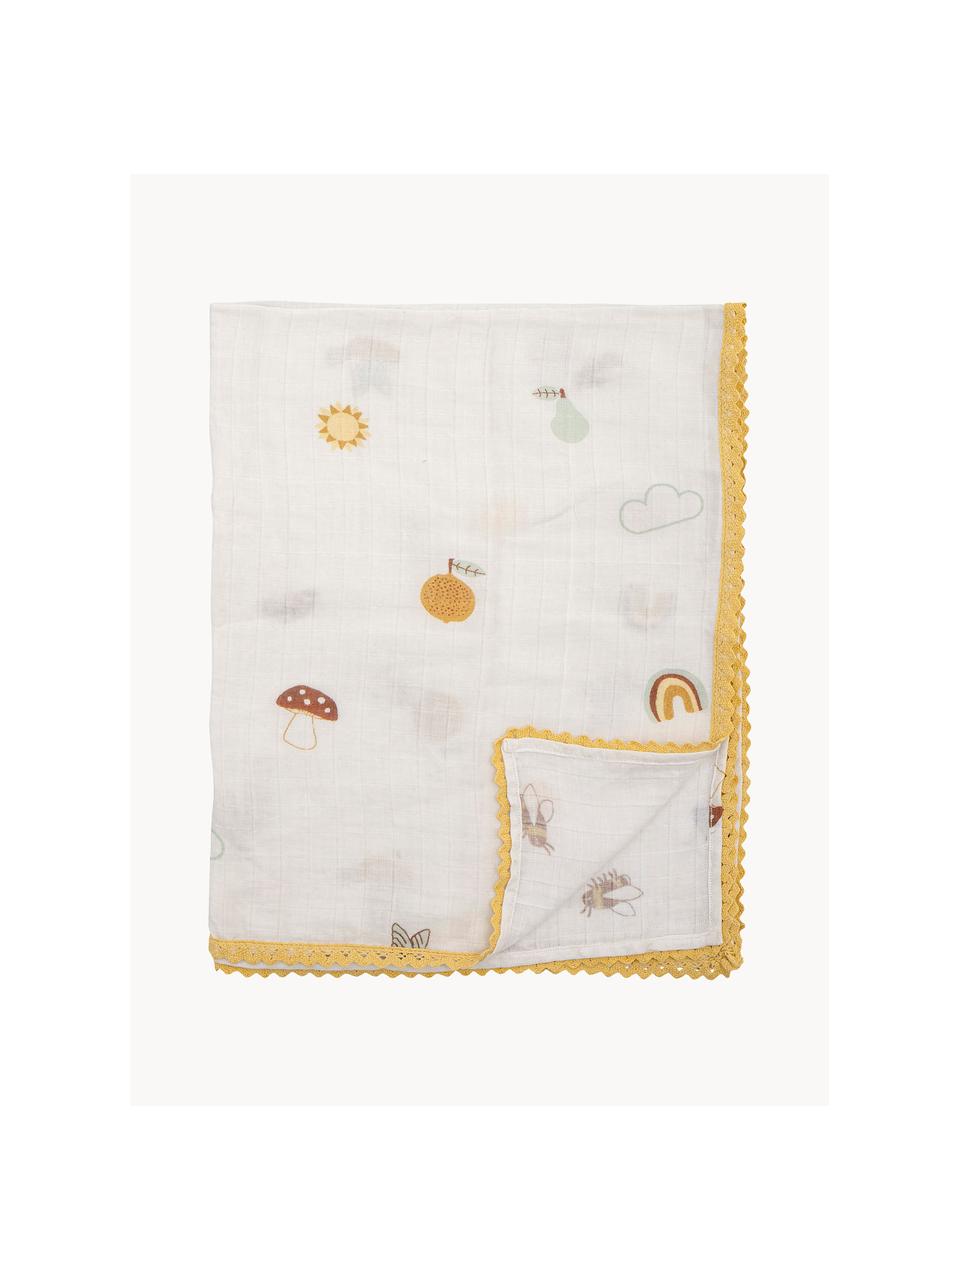 Leichte Baby-Decke Agnes, 80 % Baumwolle, 20 % Polyester, Weiß, Bunt, B 80 x L 100 cm